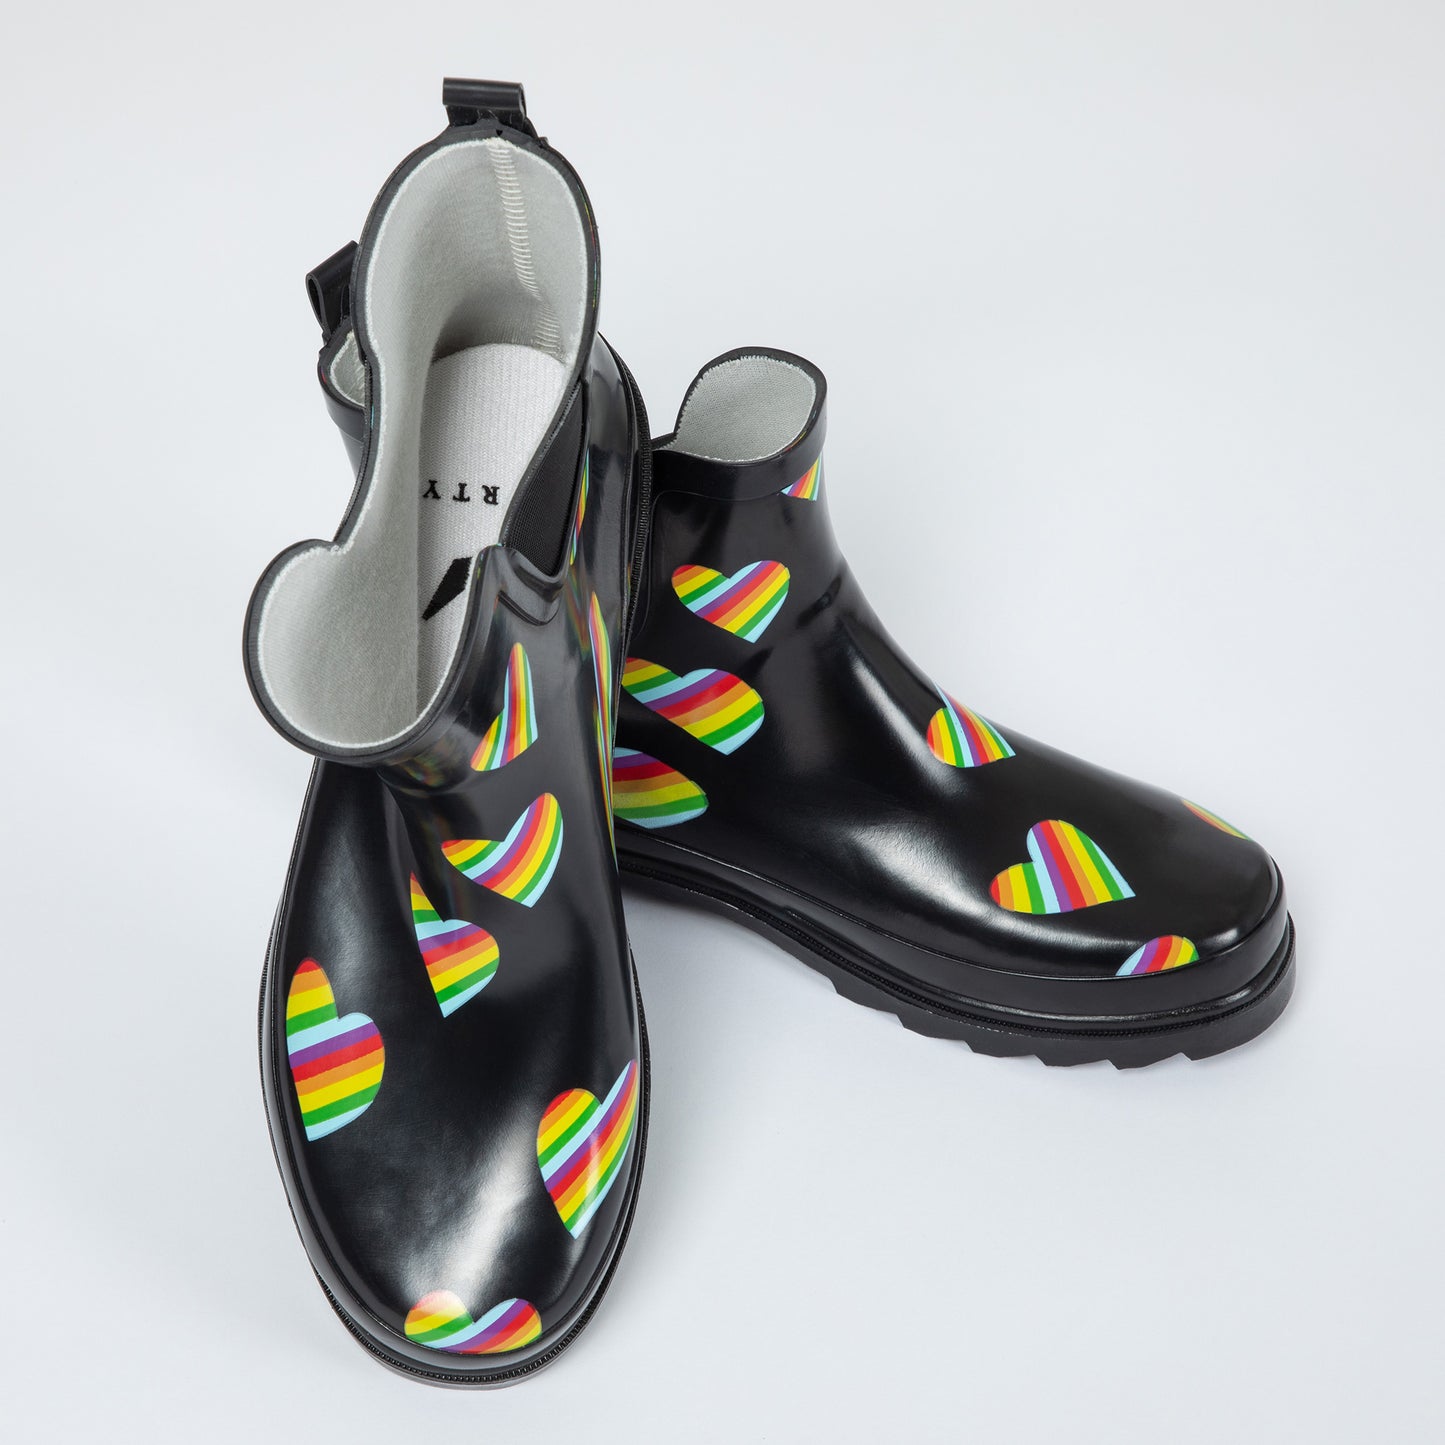 Rainbow Heart Ankle Rain Boots